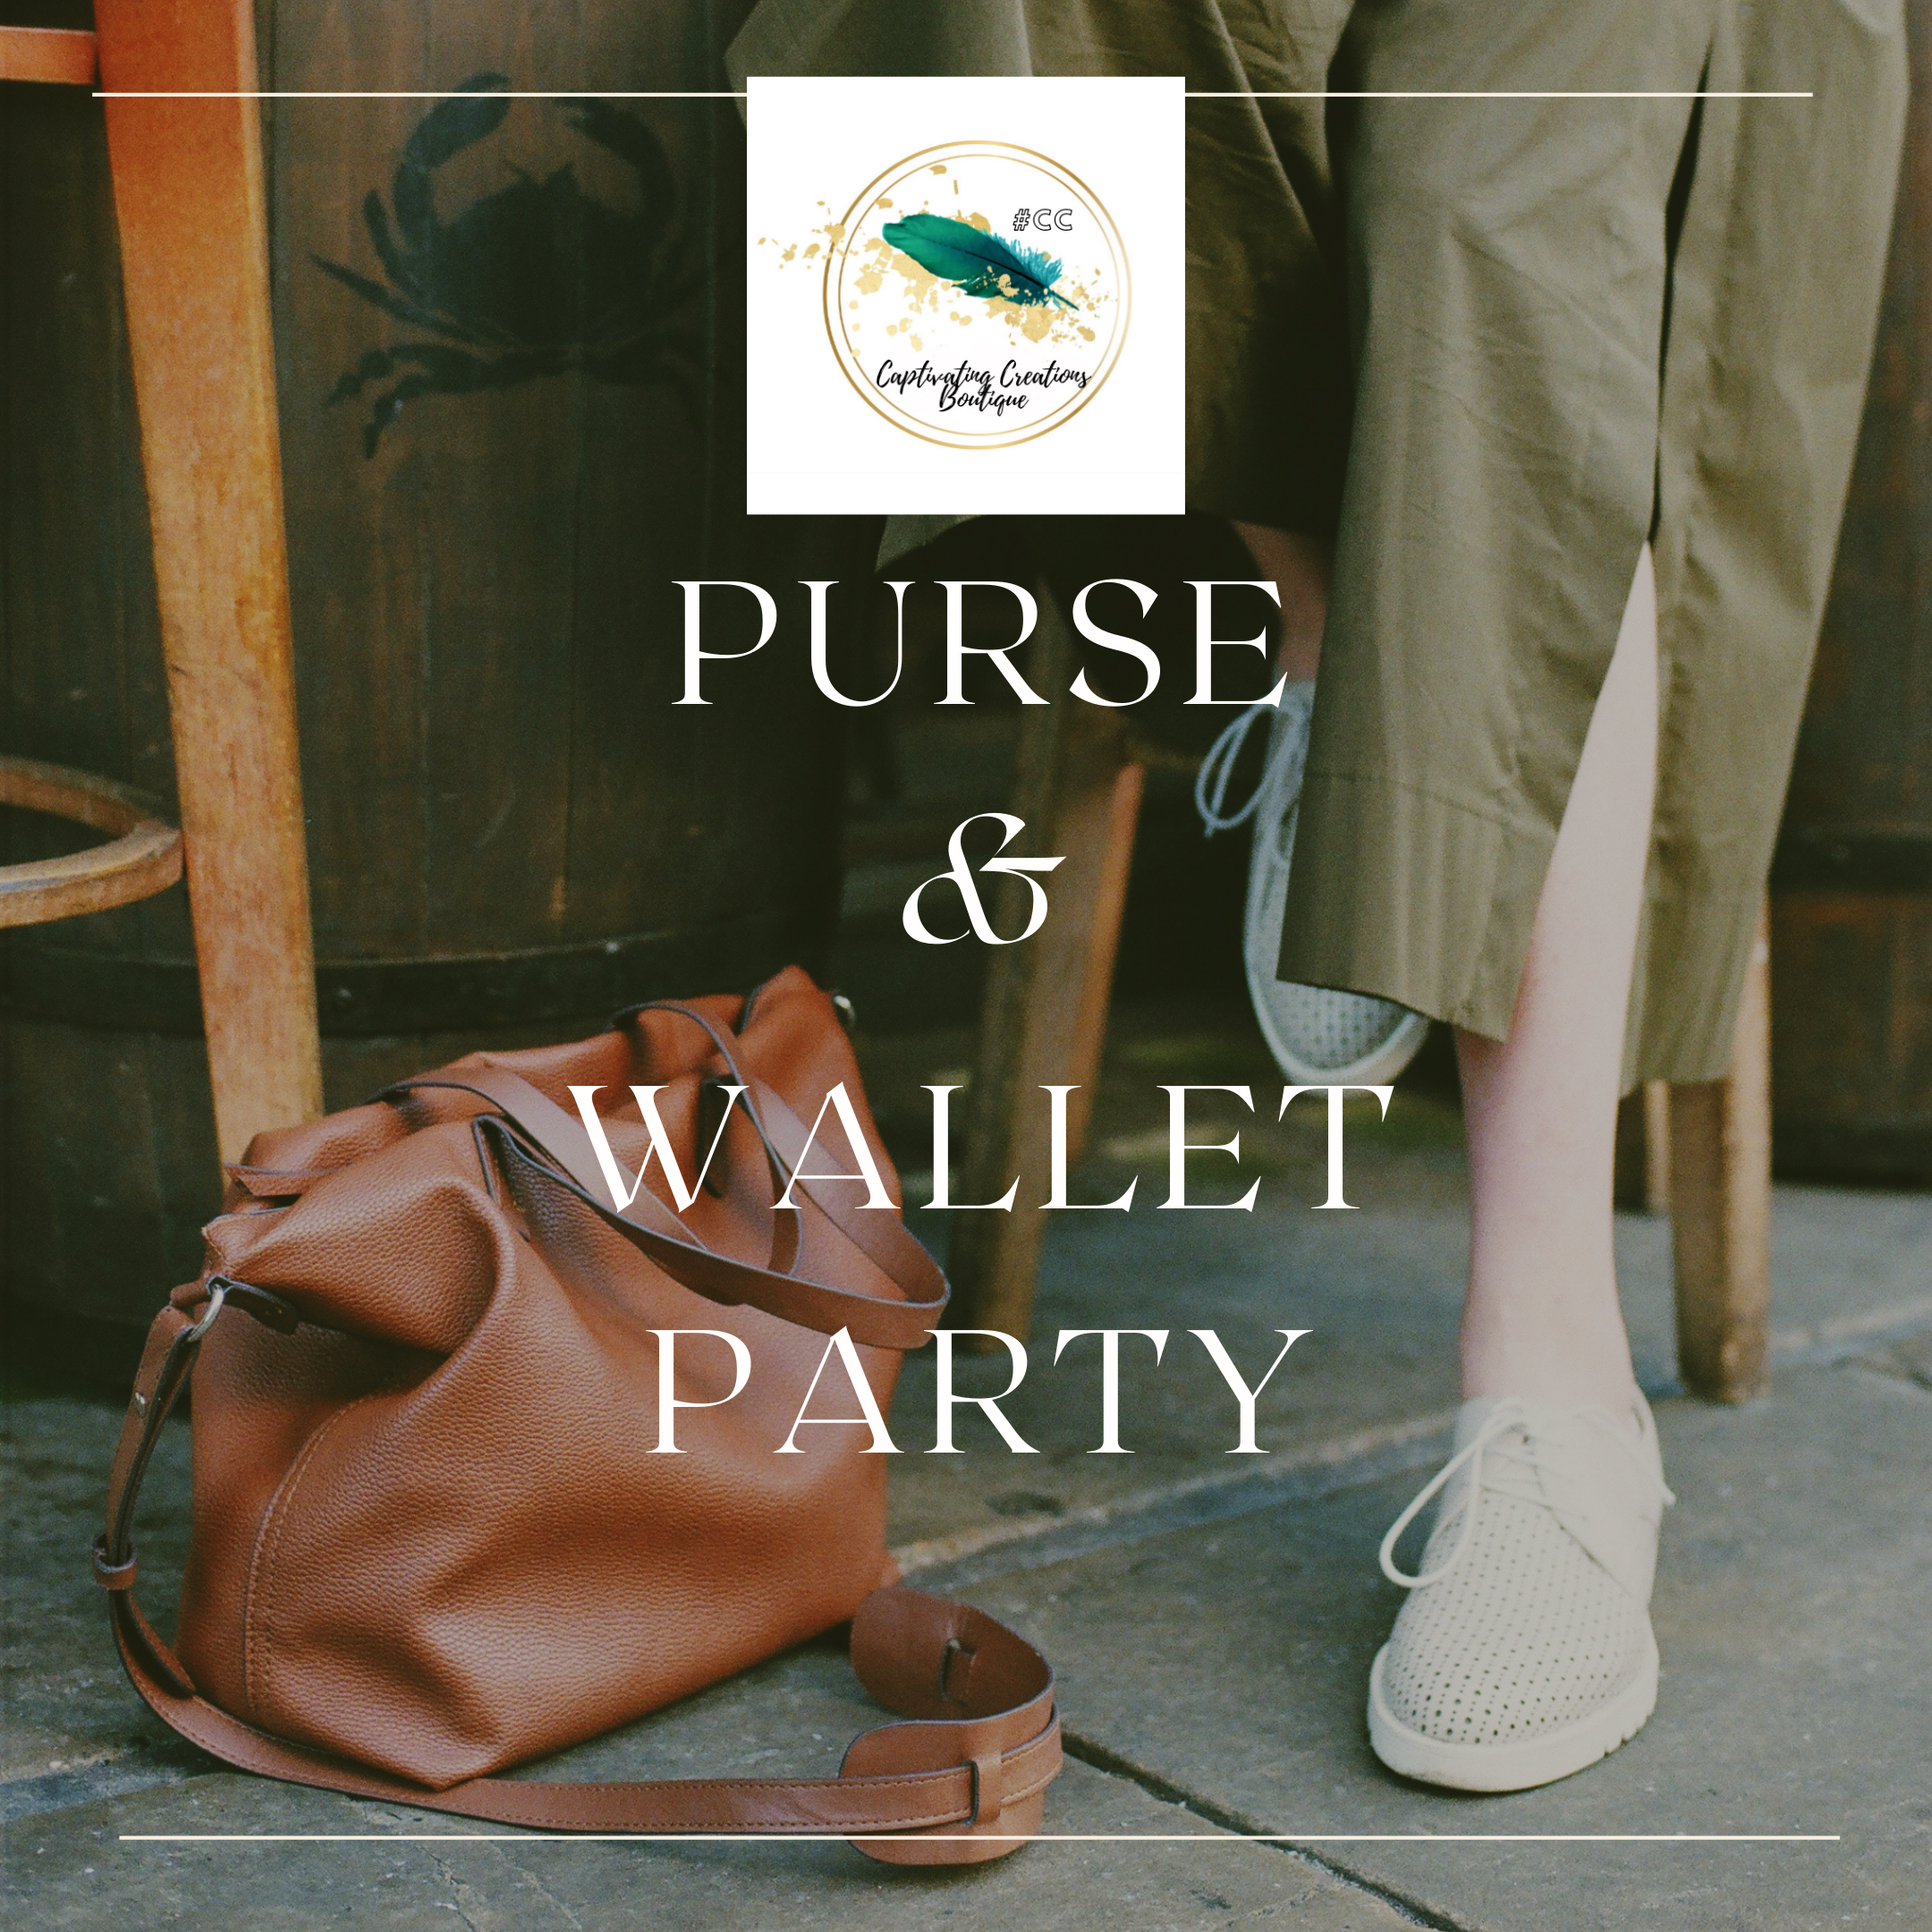 Purse & Wallet Party 1/28